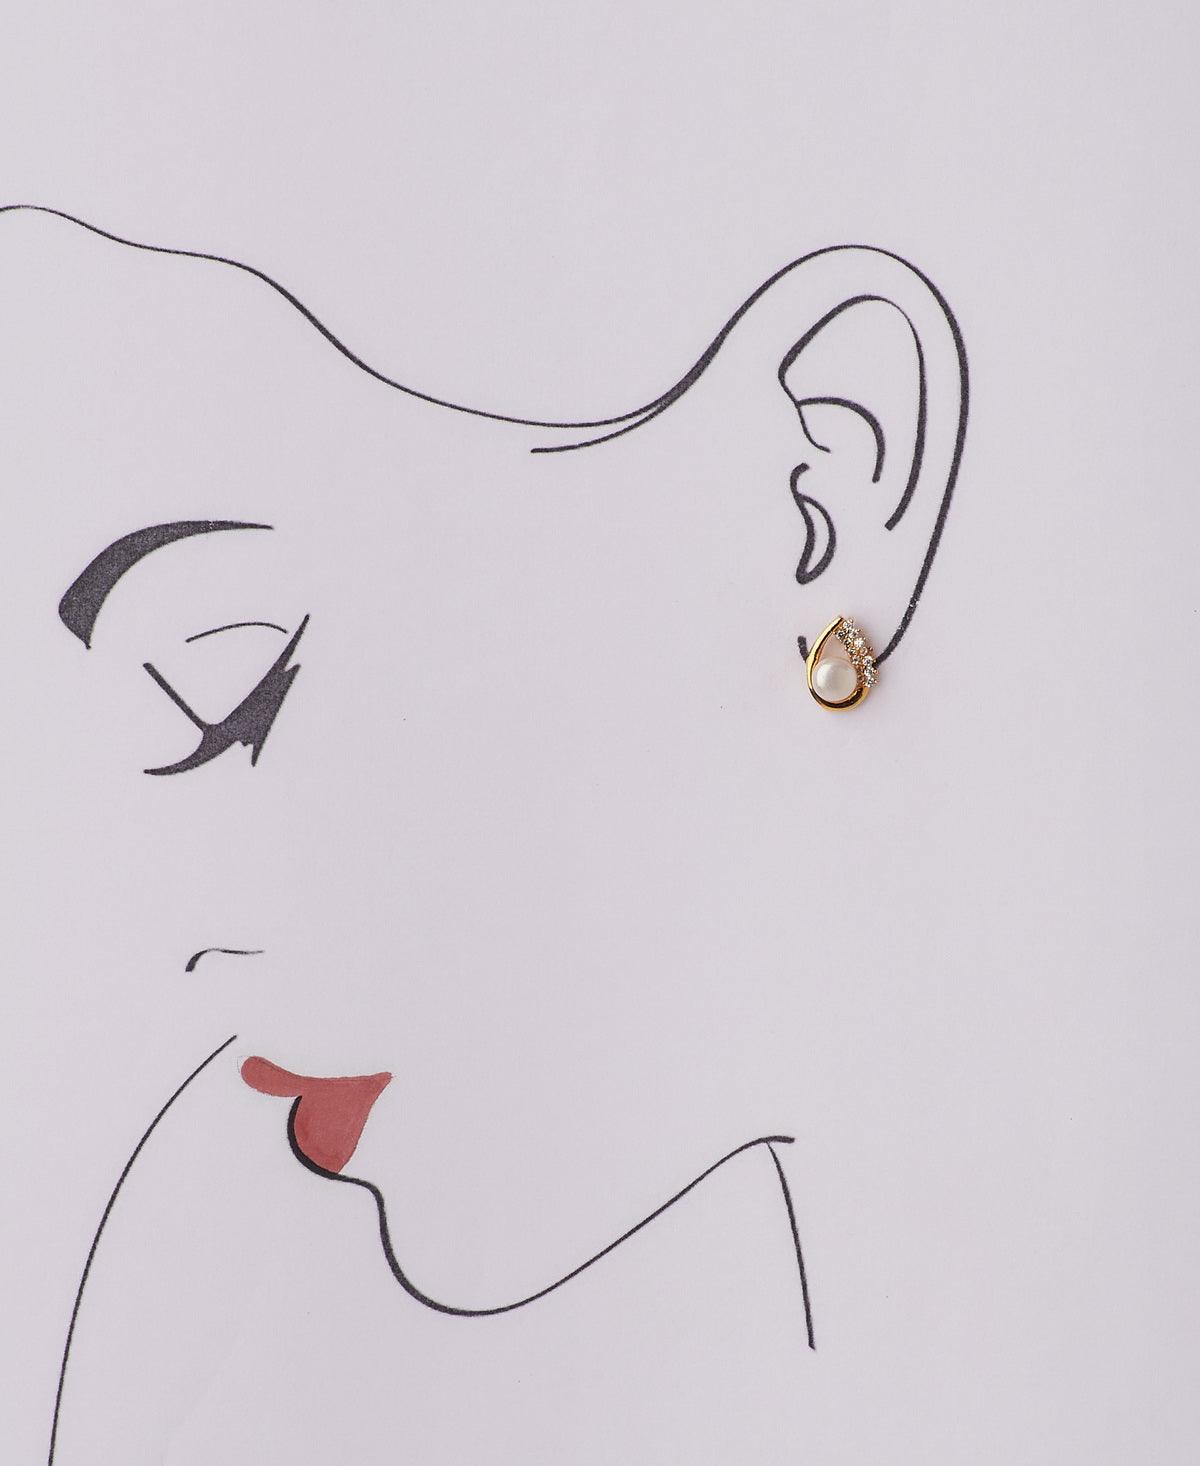 Pretty Pearl Stud Earring - Chandrani Pearls